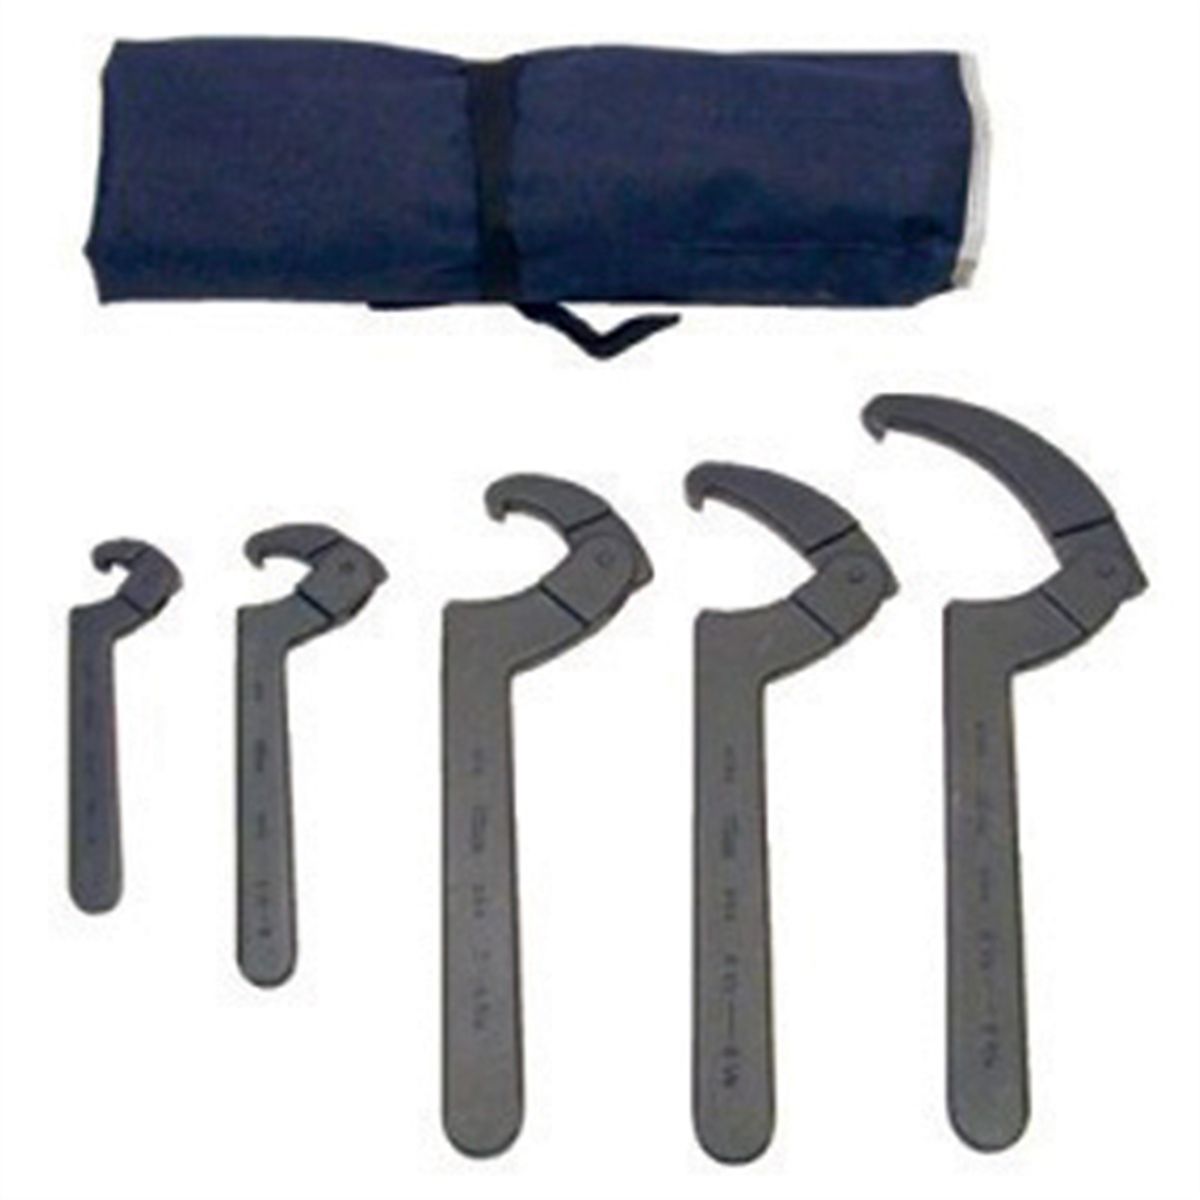 Martin Tools Adjustable Hook Spanner Wrench Set